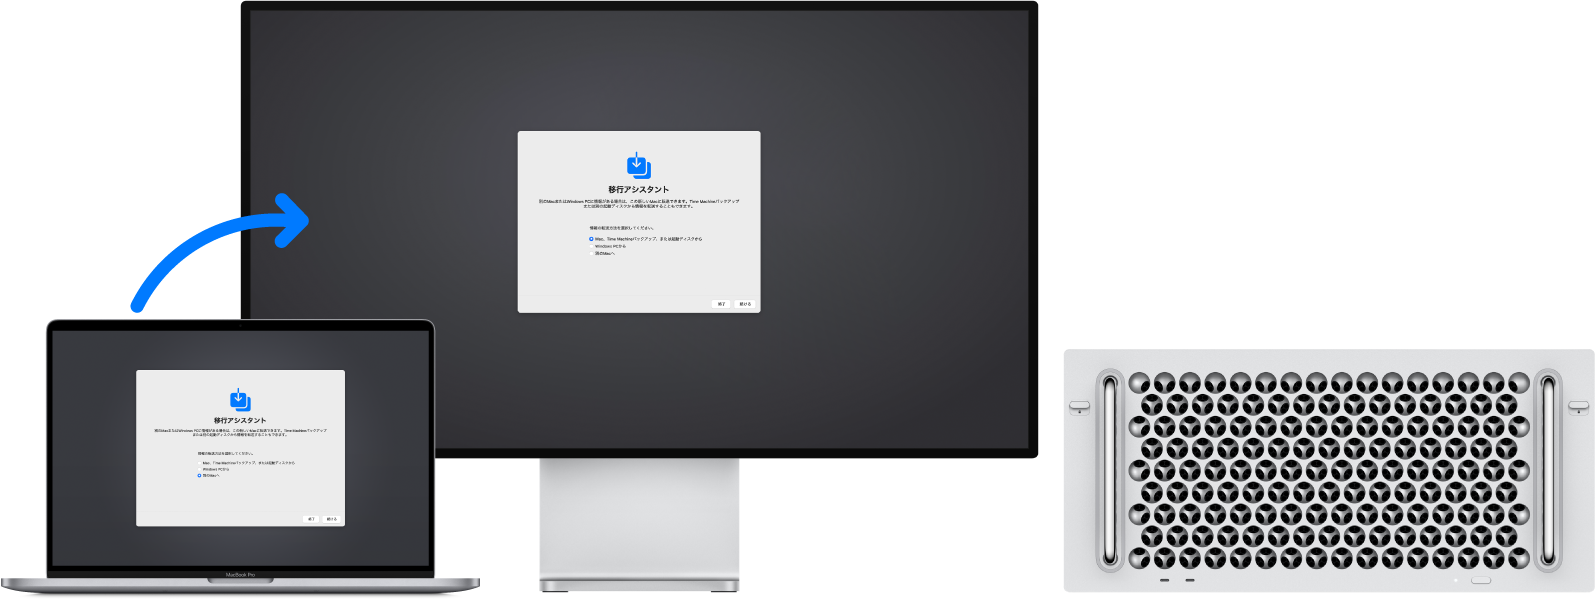 MacBook ProとMac Pro。どちらにも移行アシスタントの画面が表示されています。MacBook ProからMac Proへの矢印は、一方から他方へのデータの転送を意味しています。